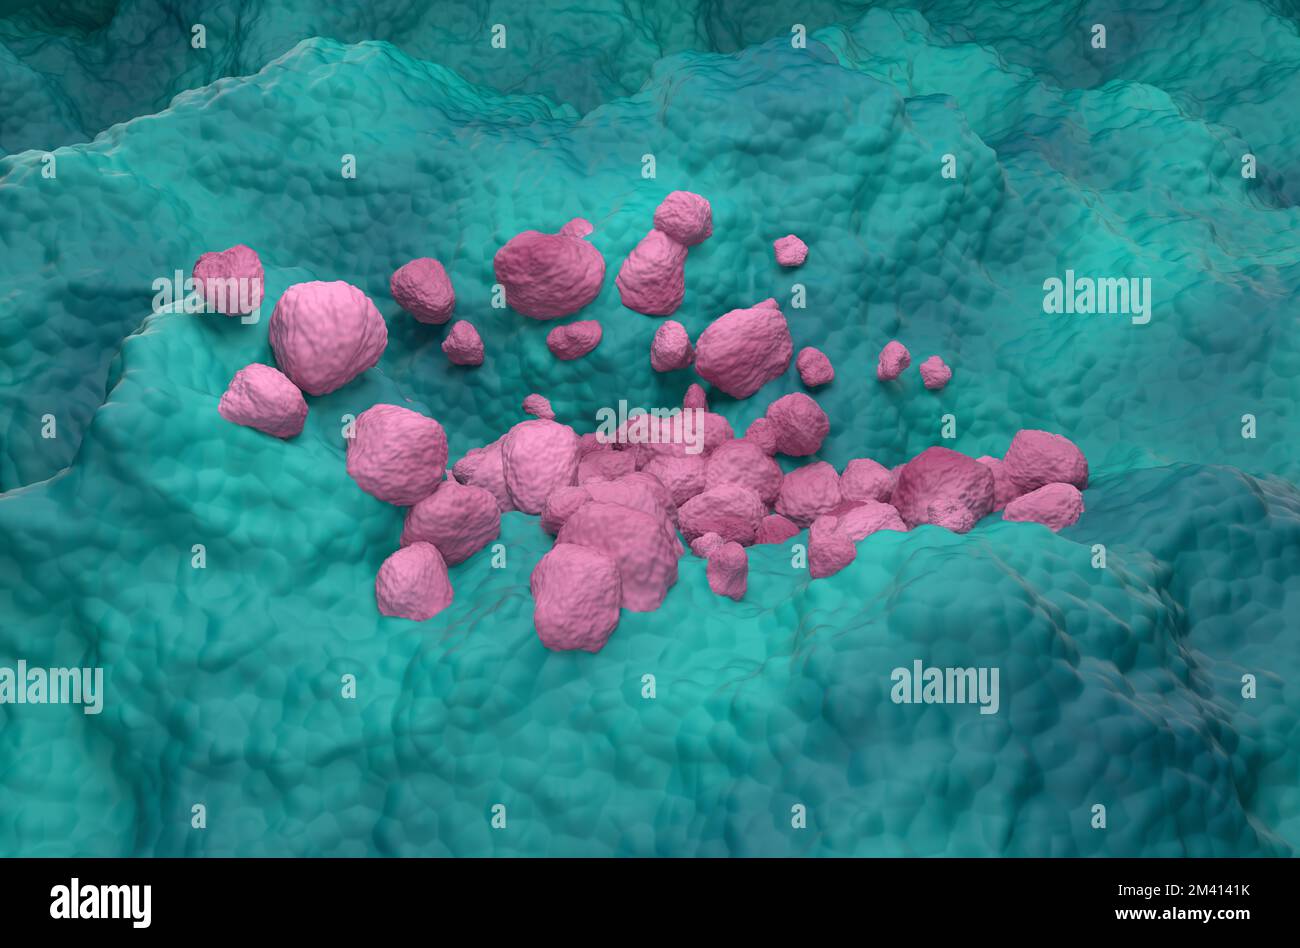 Nicht-kleinzelliges Lungenkarzinom (NSCLC) im Lungengewebe - isometrische 3D-Darstellung Stockfoto